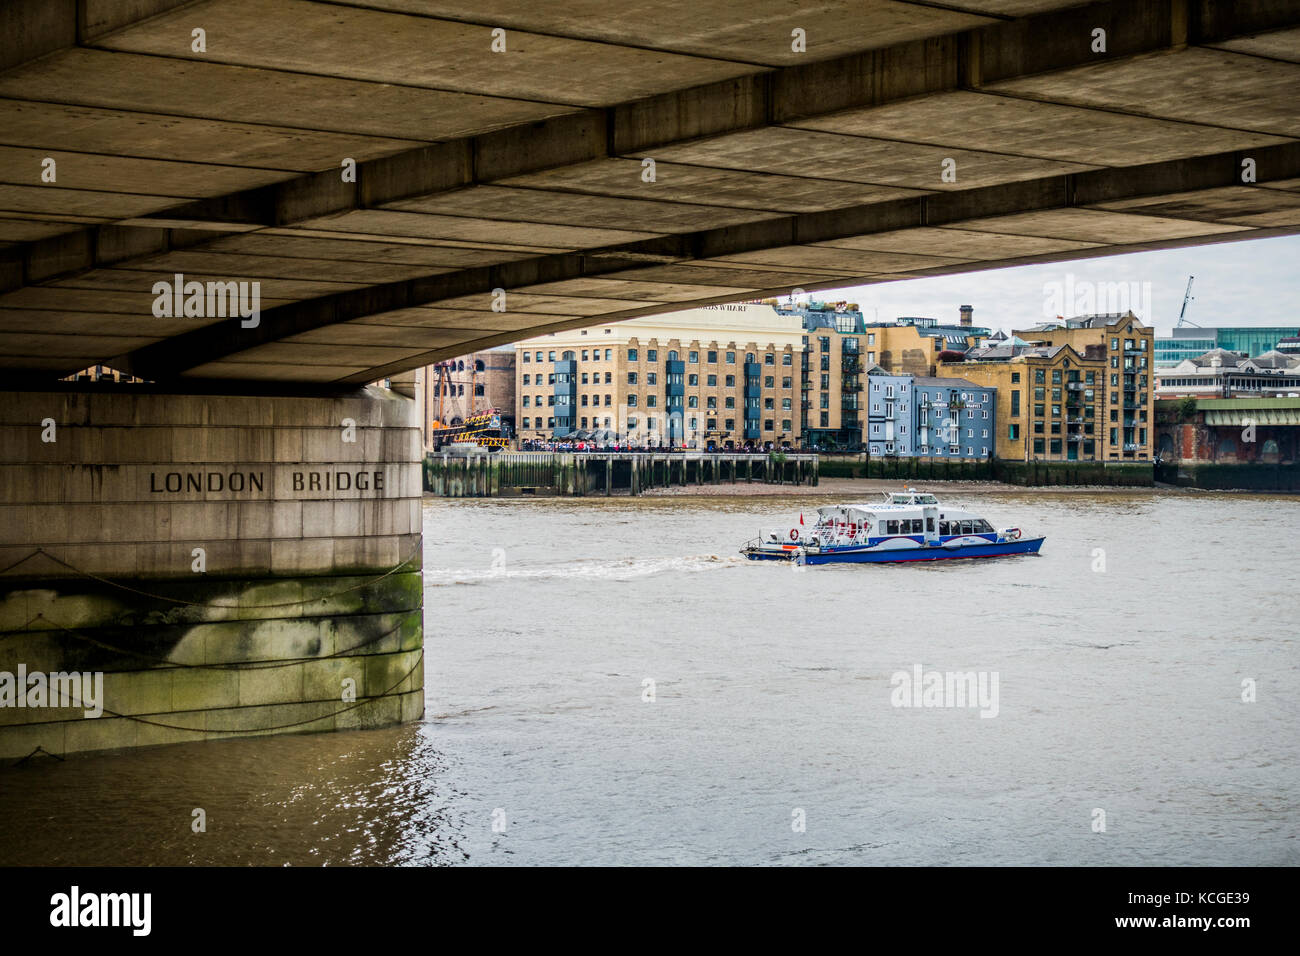 Eine sightseeing Boot segeln auf der Themse, von Apartment Gebäuden übersehen, und der Unterseite der London Bridge, England, UK. Stockfoto